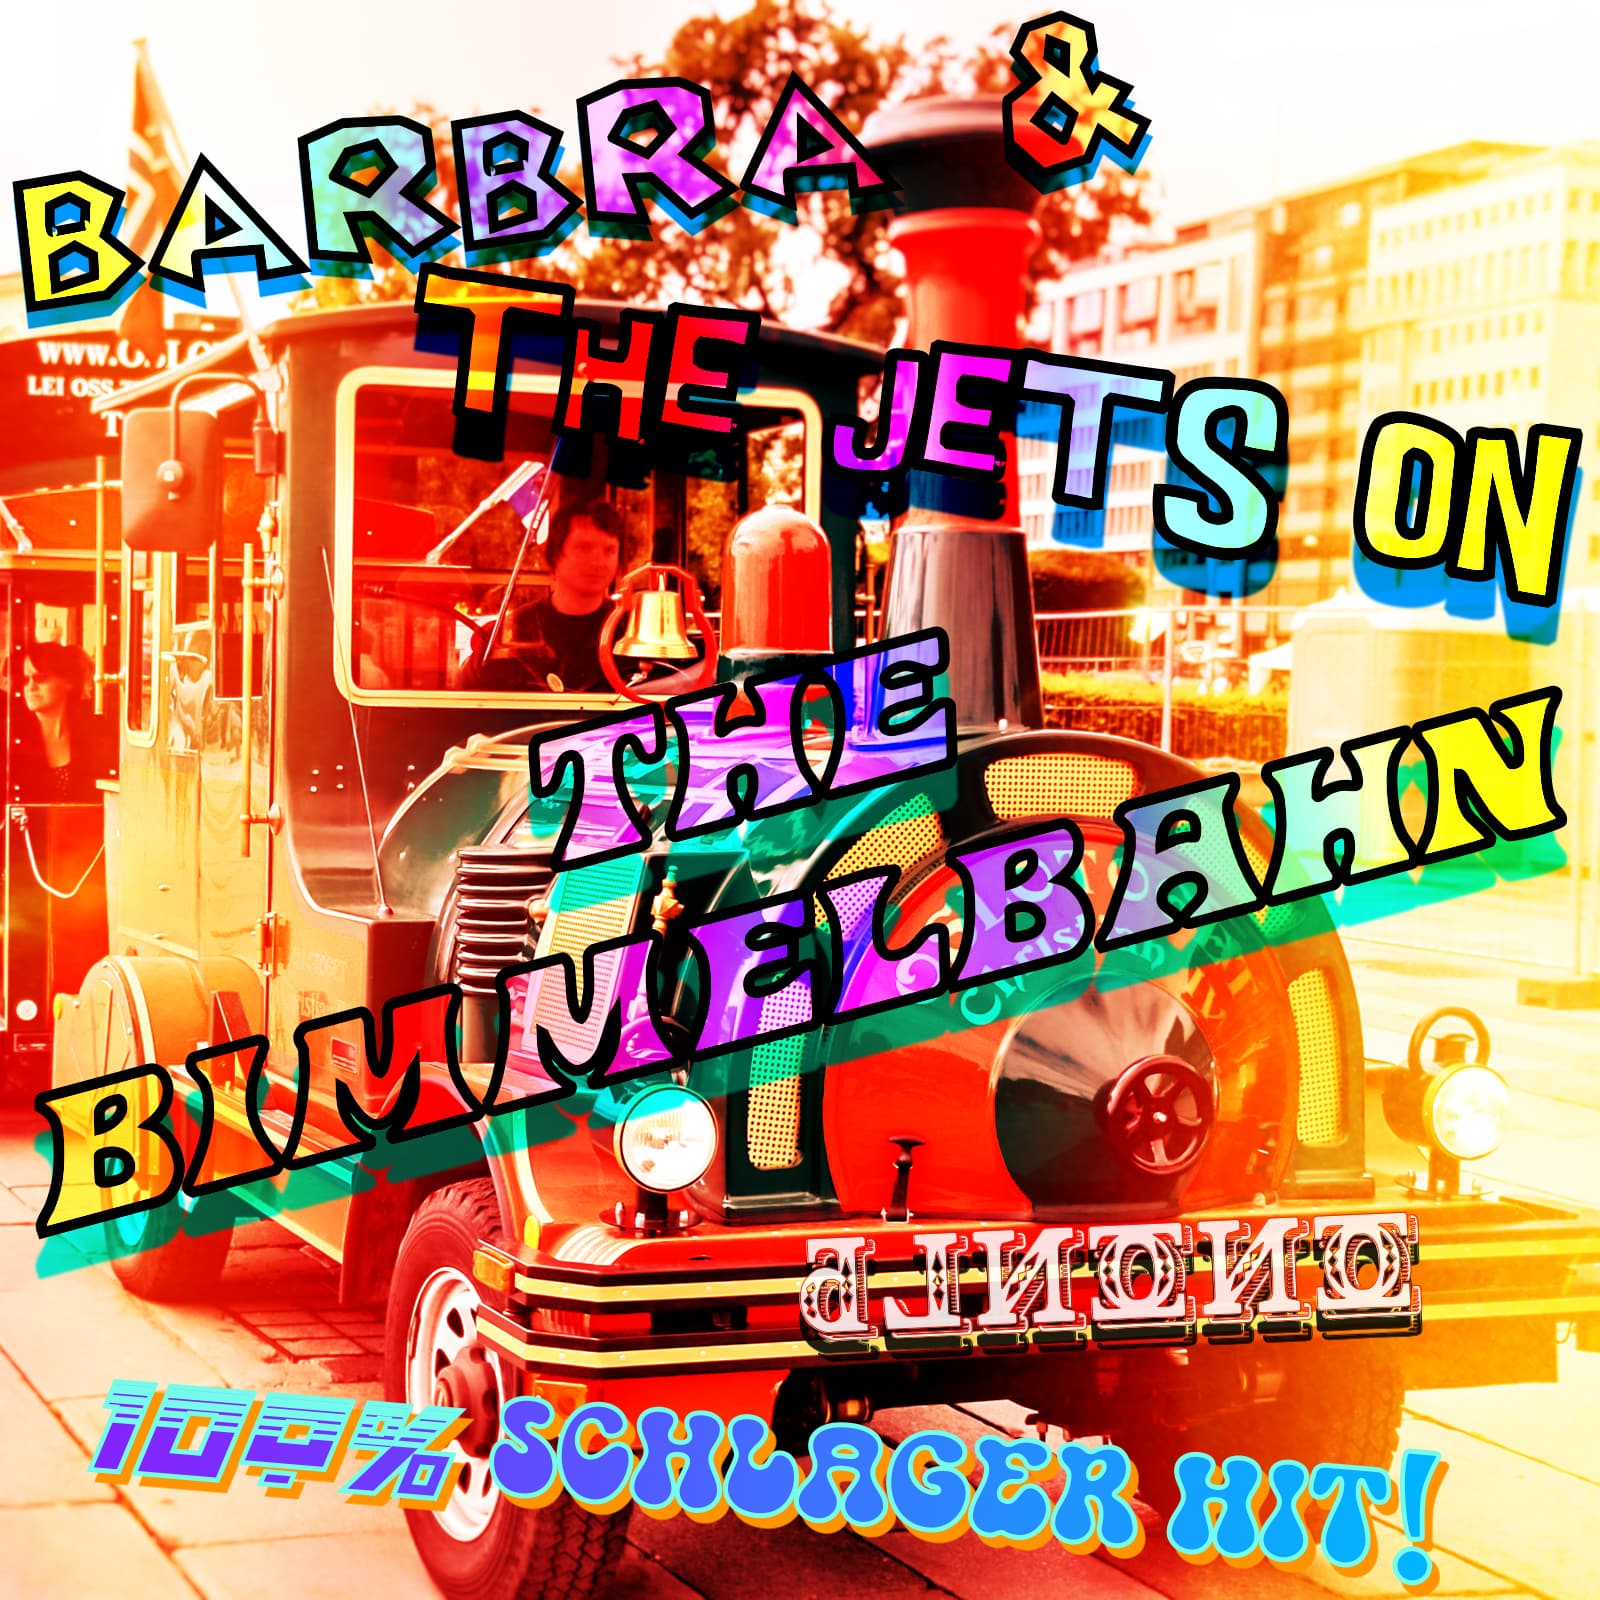 Barbra And The Jets On The Bimmelbahn (Elton John vs Buddy Poke vs Duck Sauce)